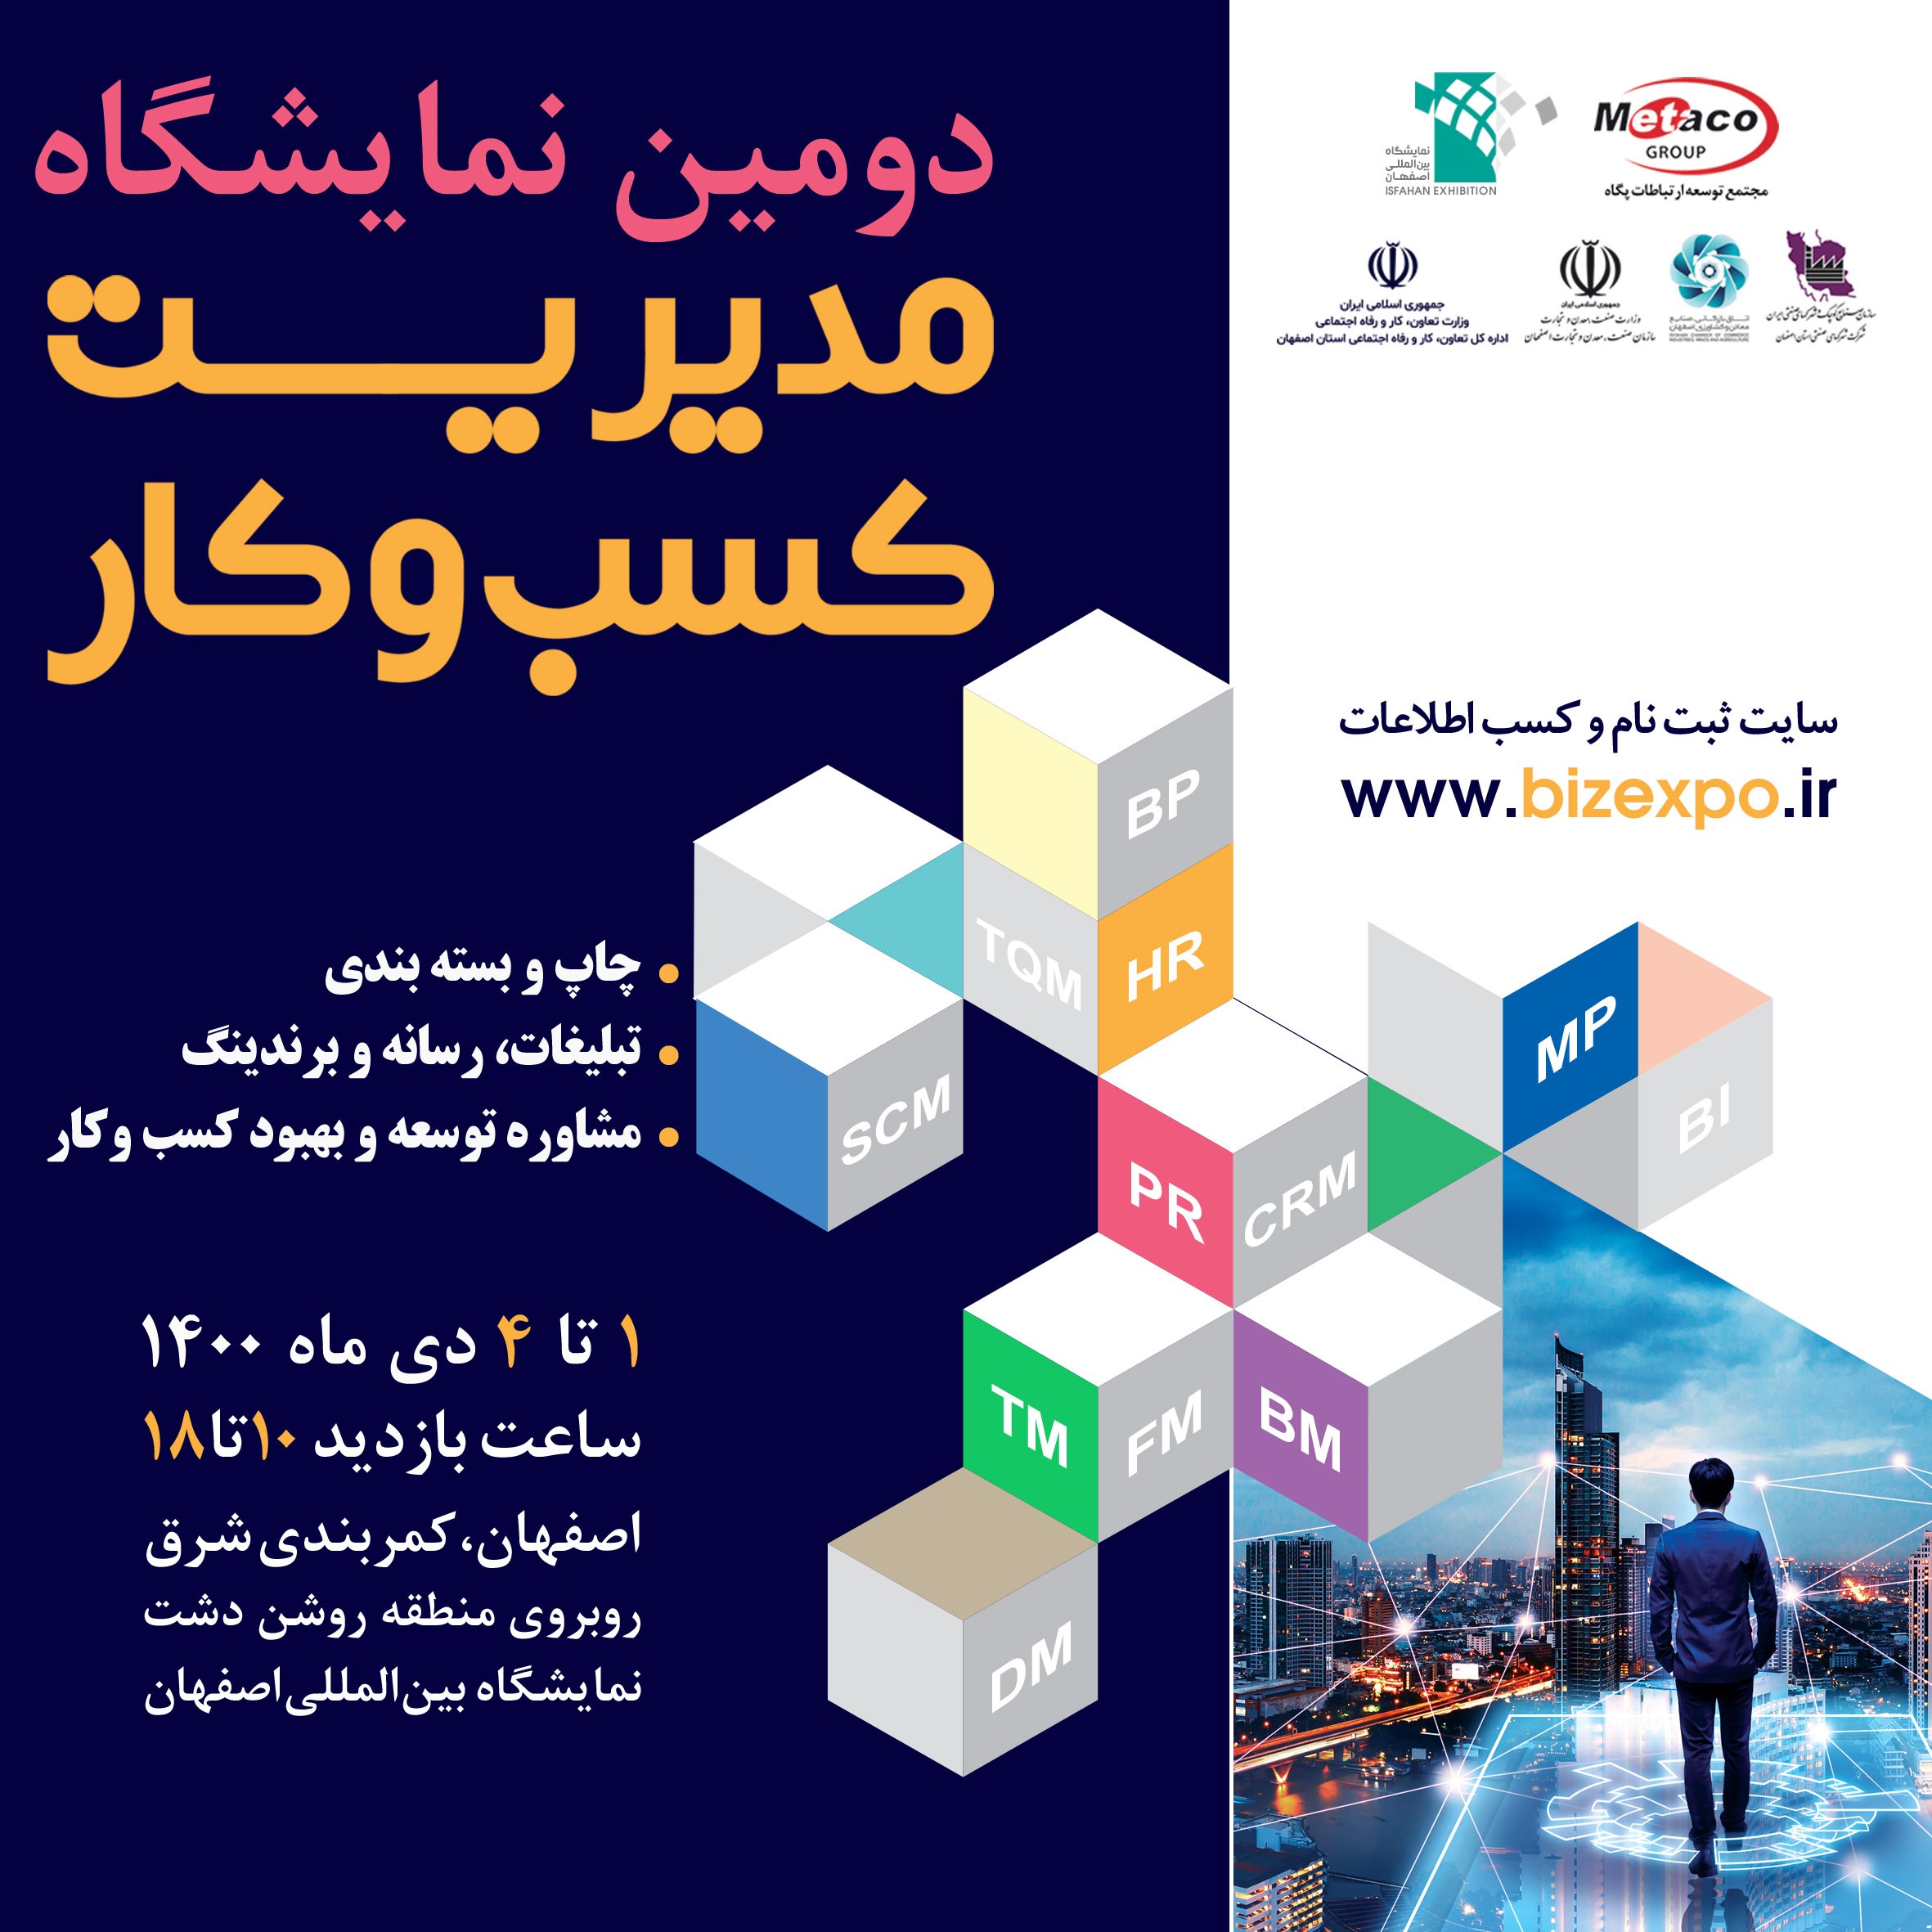 شمارش معکوس برای برپایی متفاوت‌ترین نمایشگاه مدیریت کسب و کار کشور در اصفهان